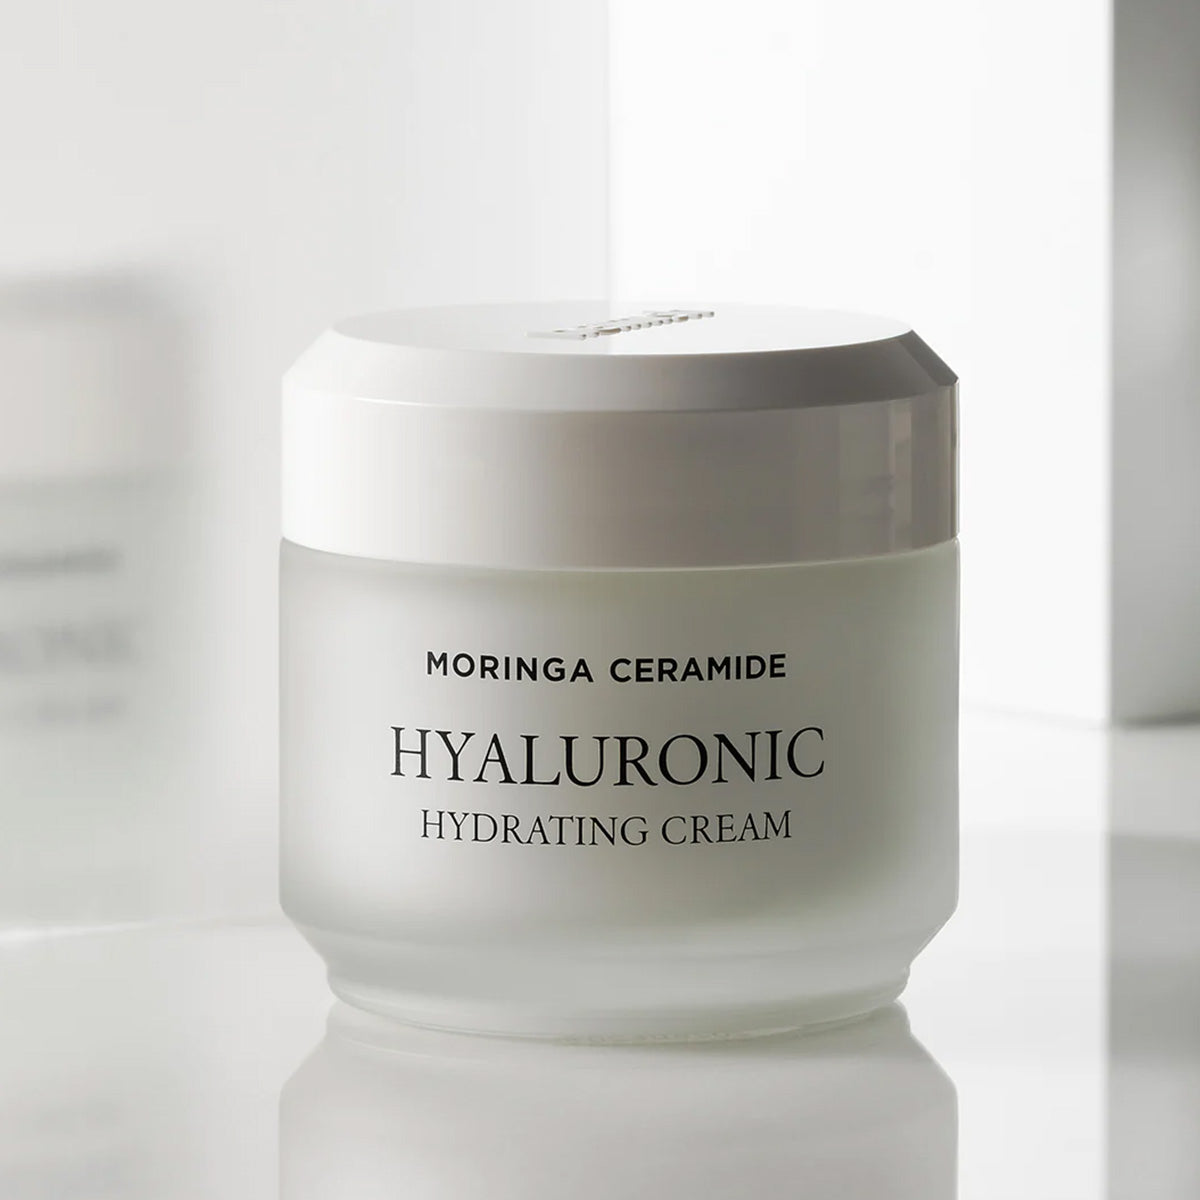 HEIMISH-Moringa-Ceramide-Hyaluronic-Hydrating-Cream.jpg